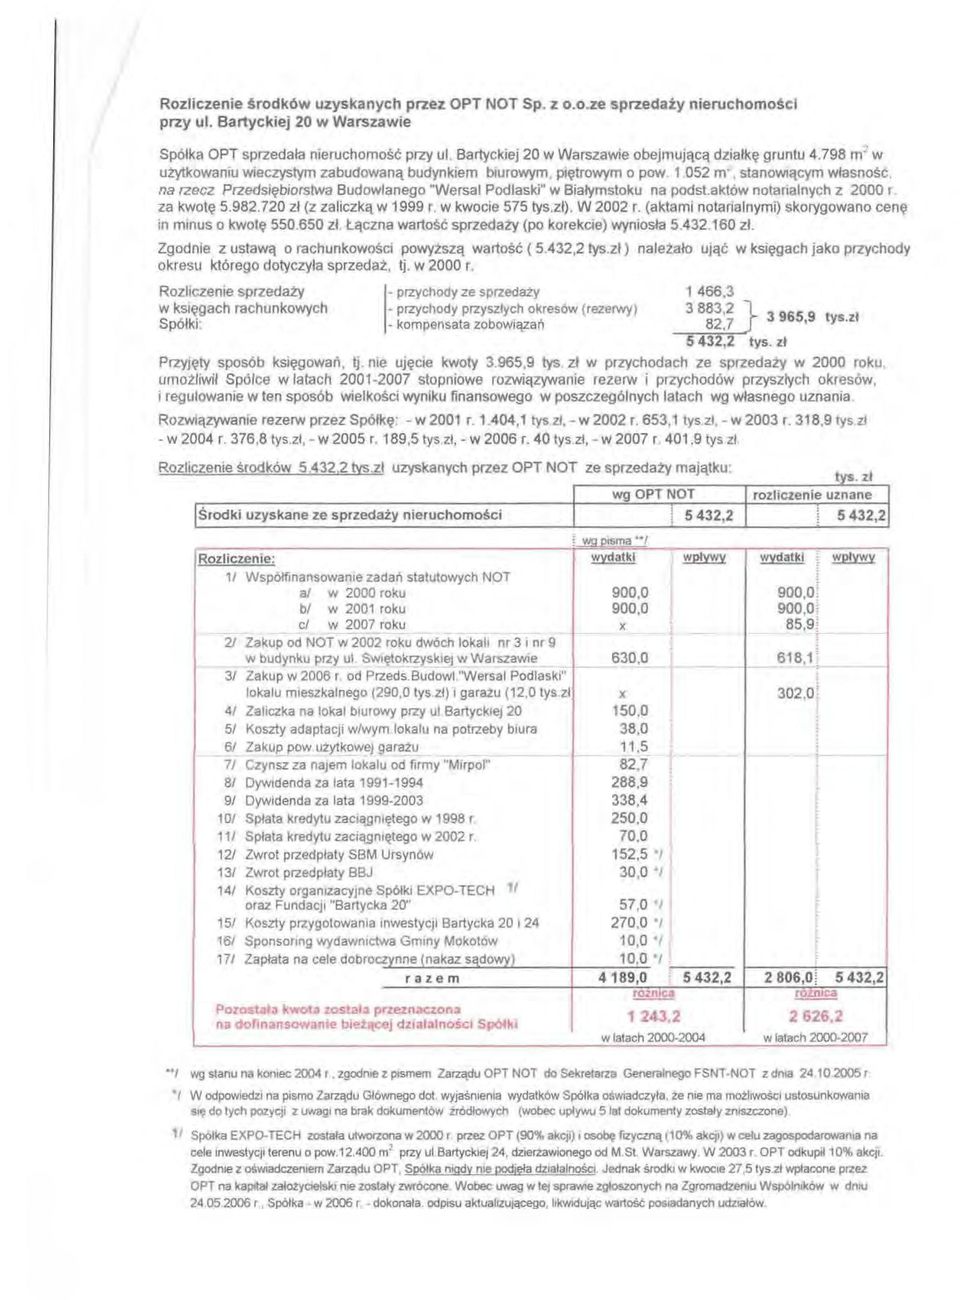 052 m stanowictcym wlasnosc, na rzecz Przedsu~biorstwa Budowlanego "Wersal Pod Iaski" w Bialymstoku na podst.akt6w notarialnych z 2000 r. za kwot~ 5.982.720 zl (z zaliczkct w 1999 r. w kwocie 575 tys.